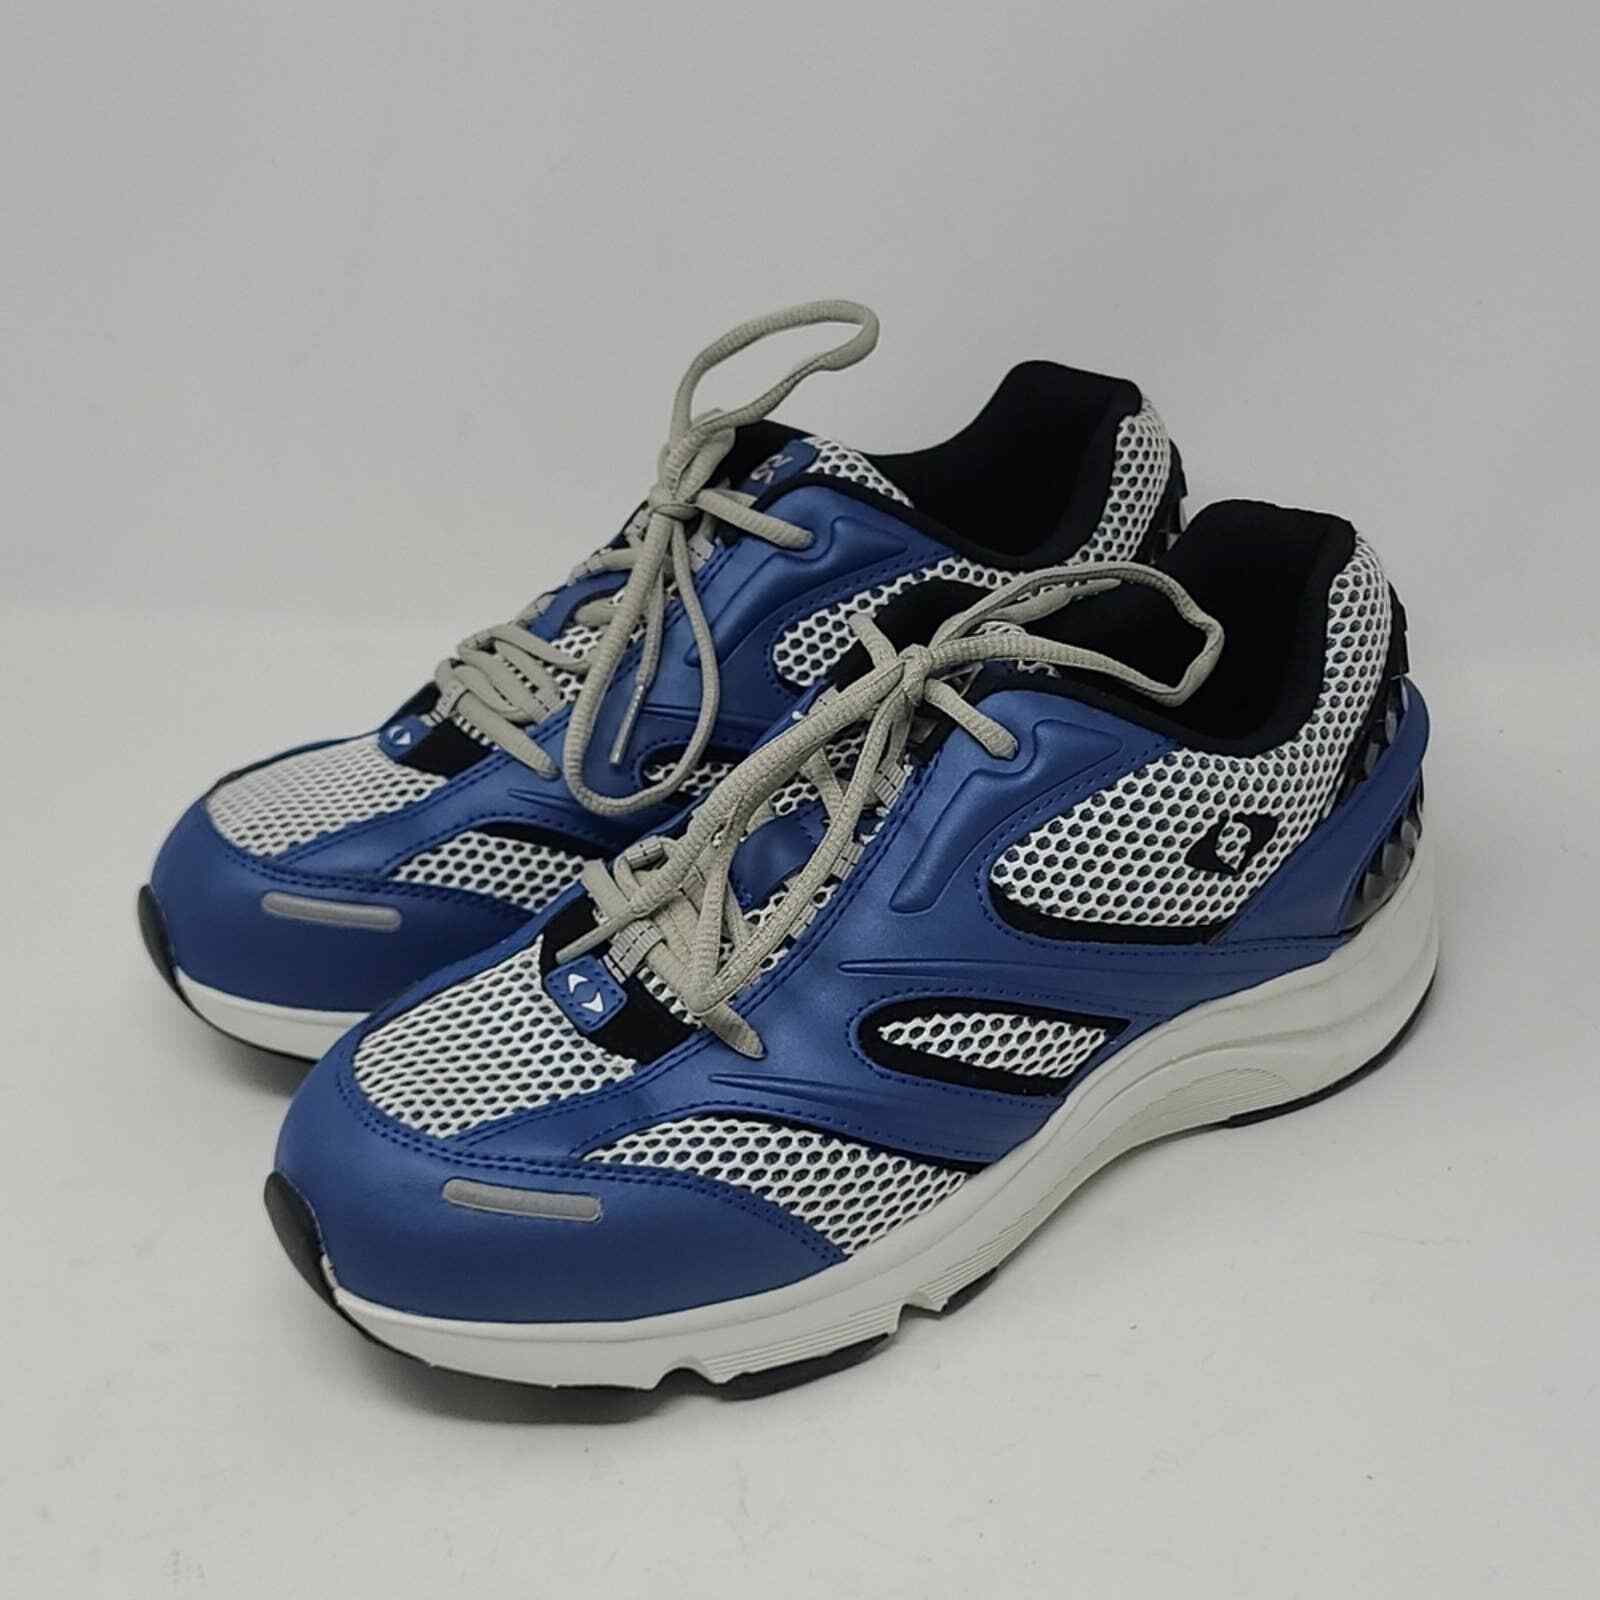 Apex V551 Men's Steath Runner Shite Blue Comfort Shoes Size 9 Extra Wide